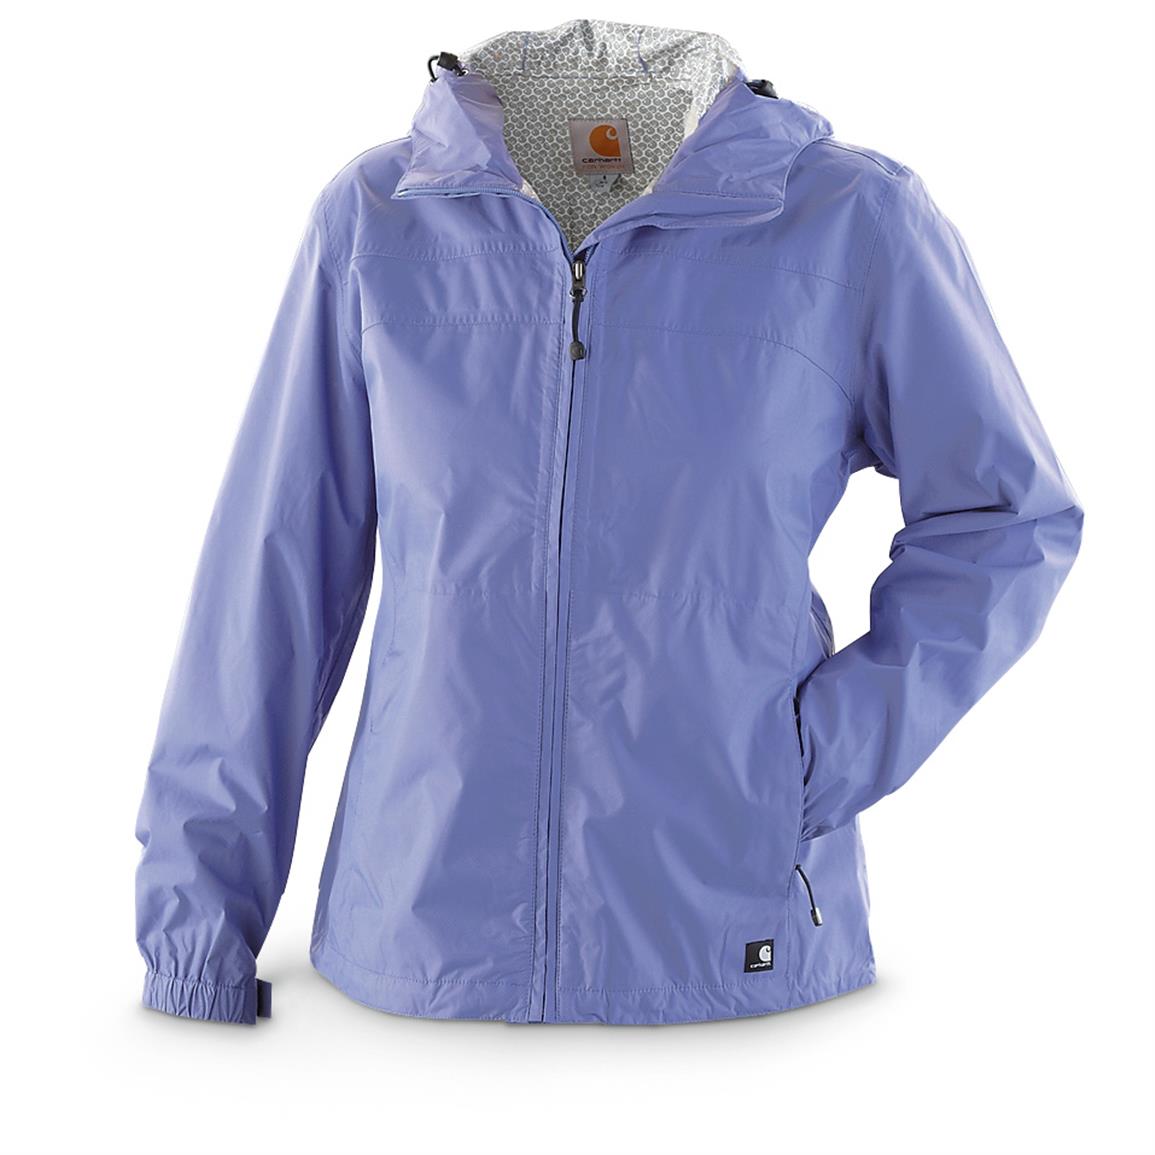 Carhartt Women's' Downburst Waterproof / Breathable Jacket - 640252 ...